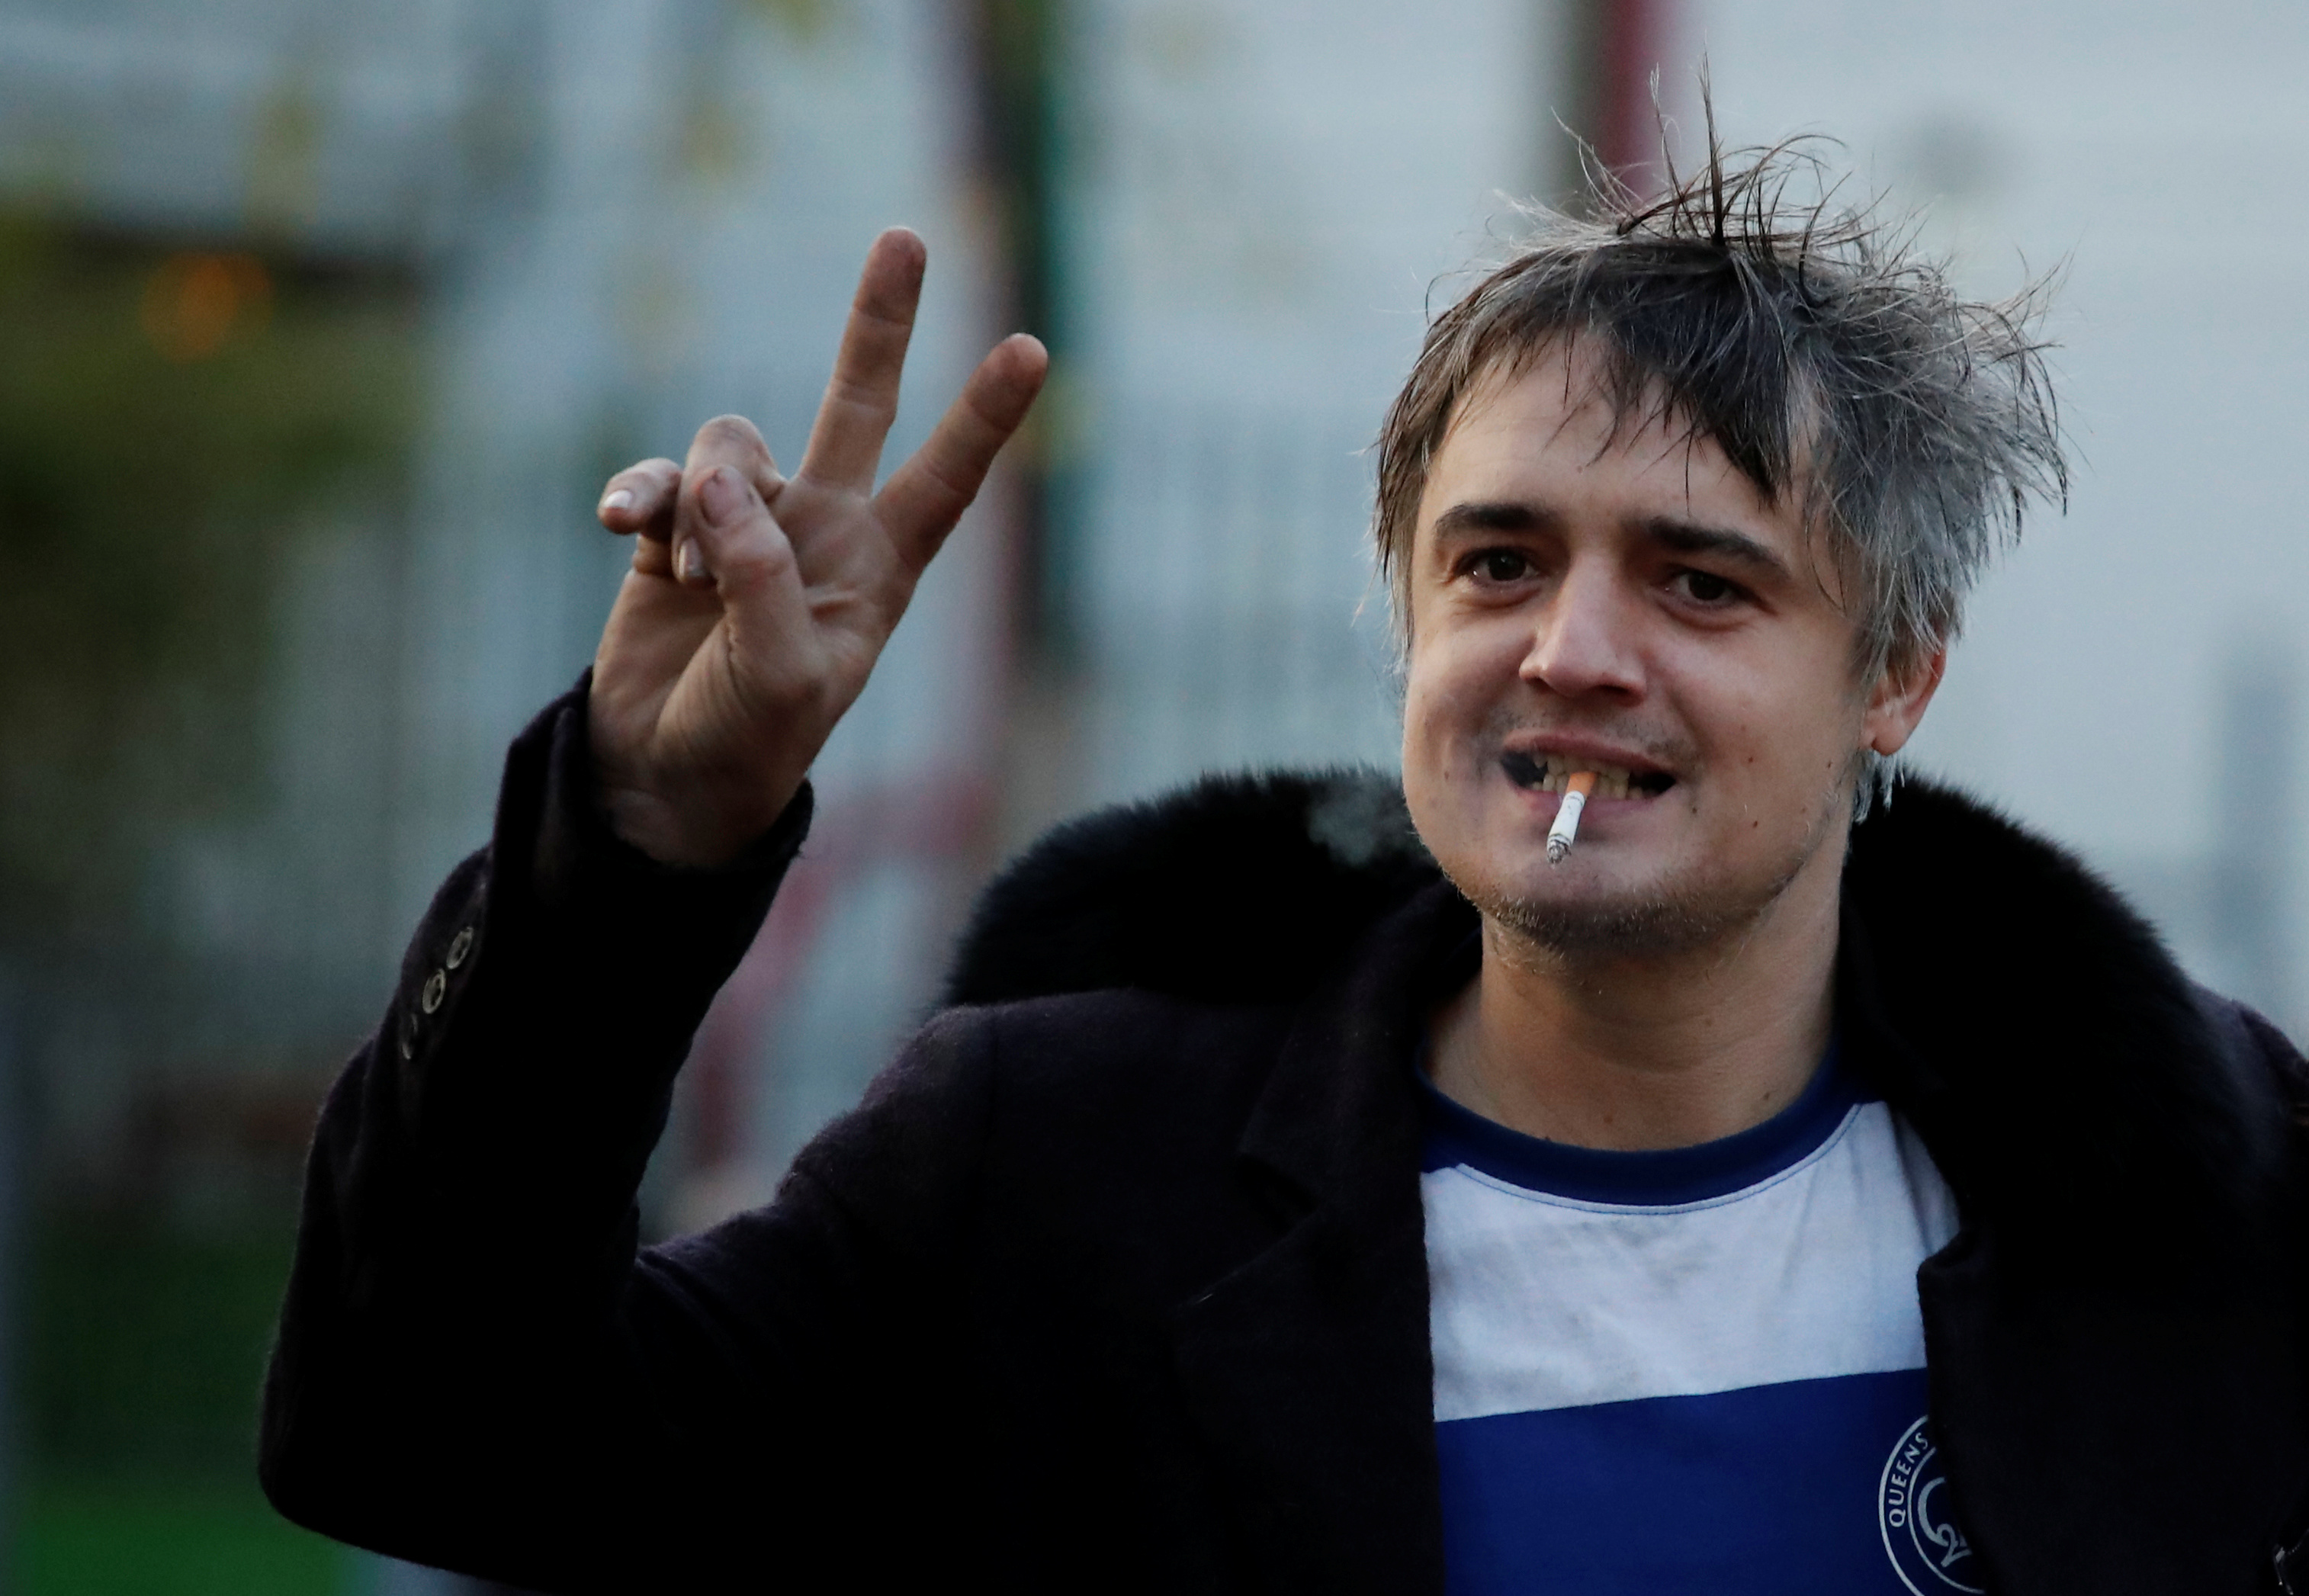 Le rocker britannique Pete Doherty, poursuivi pour une altercation sur la voie publique, a été condamné mardi à Paris à une peine de trois mois de prison avec sursis avec mise à l'épreuve et une amende de 5.000 euros, a-t-on appris de source judiciaire. /Photo prise le 12 novembre 2019/REUTERS/Benoit Tessier